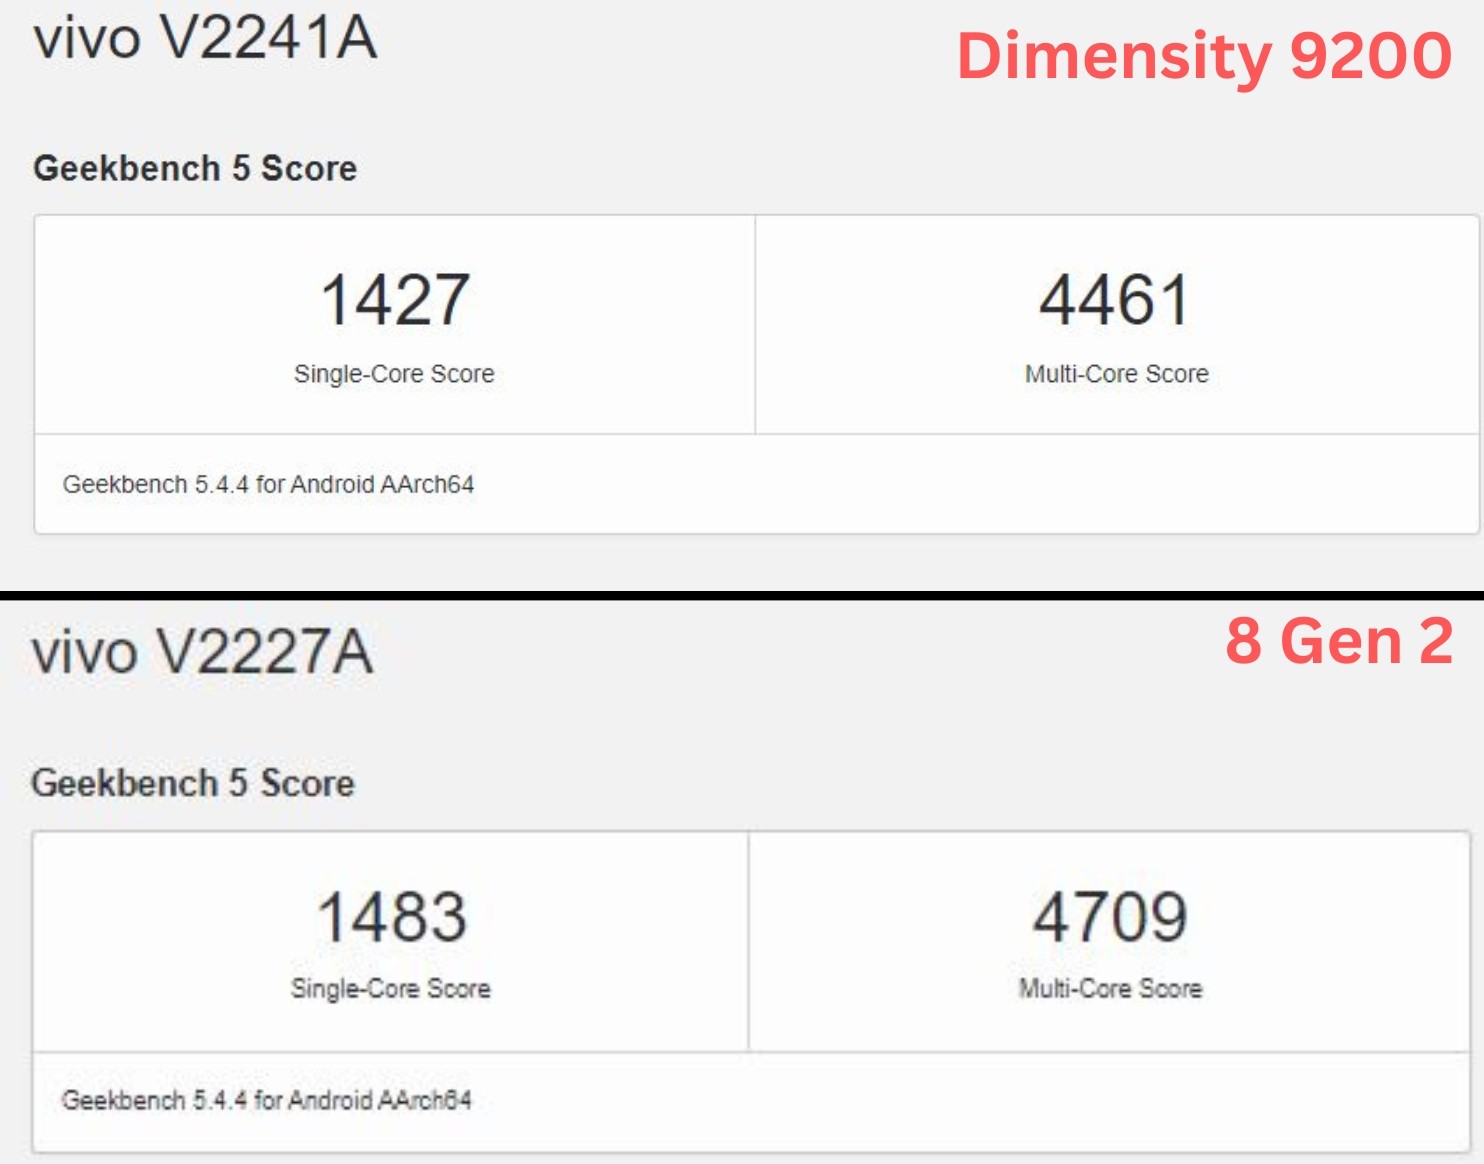 8 Gen 2 vs Dimensity 9200 Geekbench